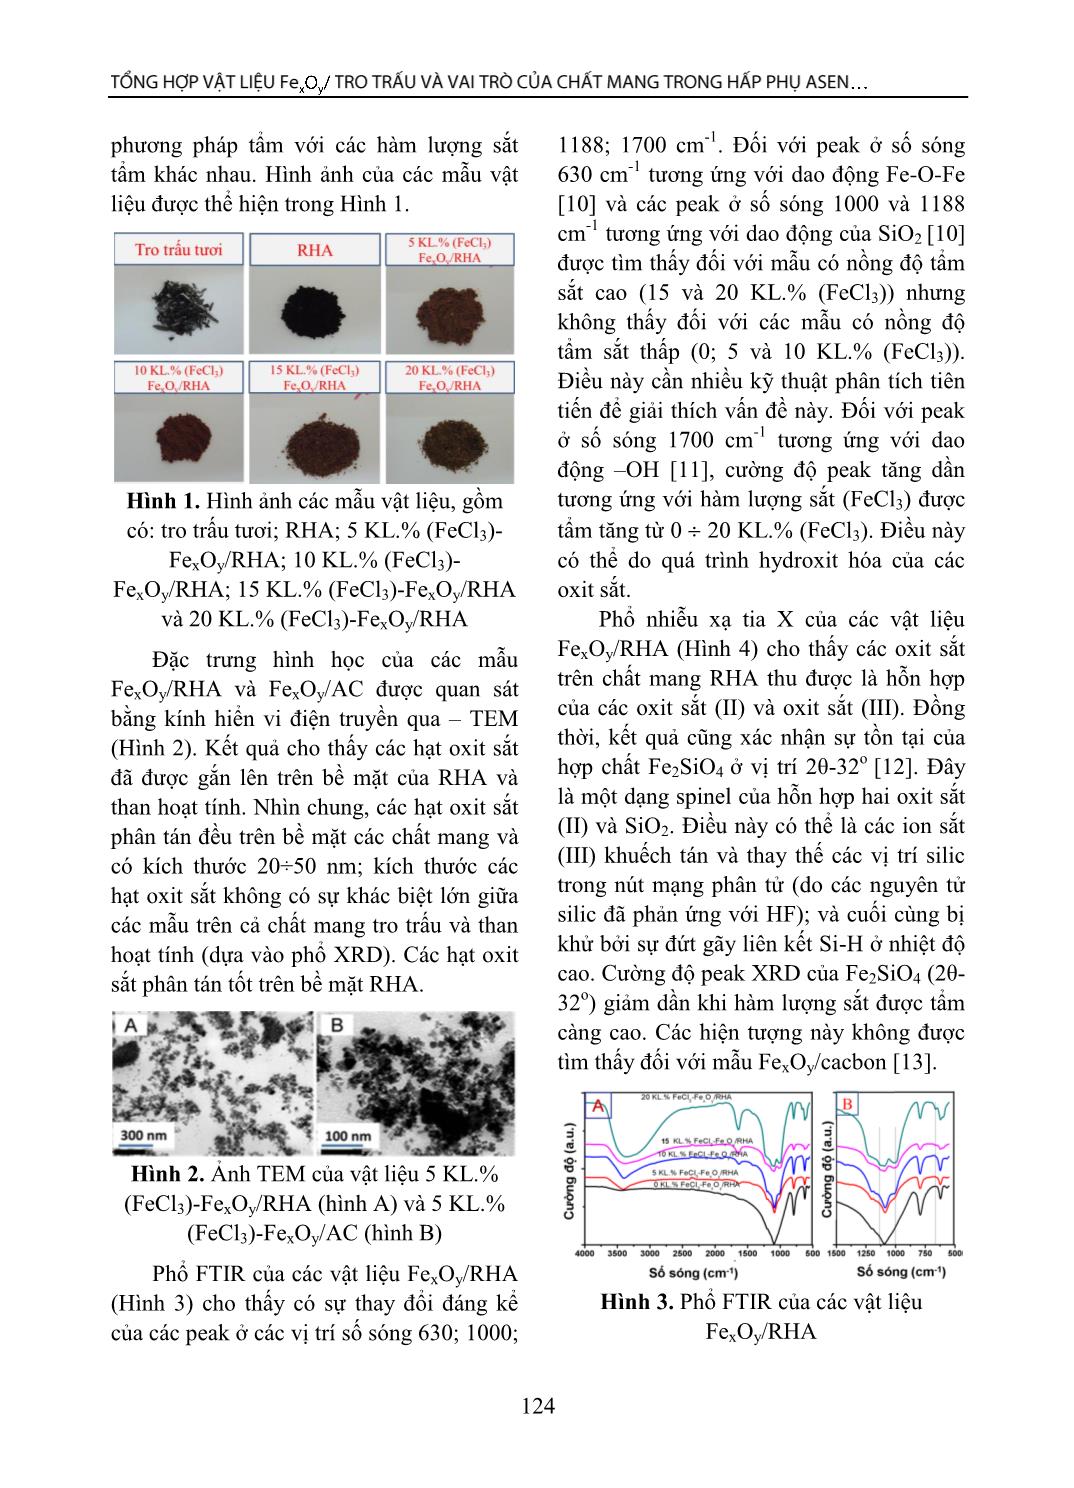 Tổng hợp vật liệu FexOy/ tro trấu và vai trò của chất mang trong hấp phụ Asen từ nước ngầm trang 4